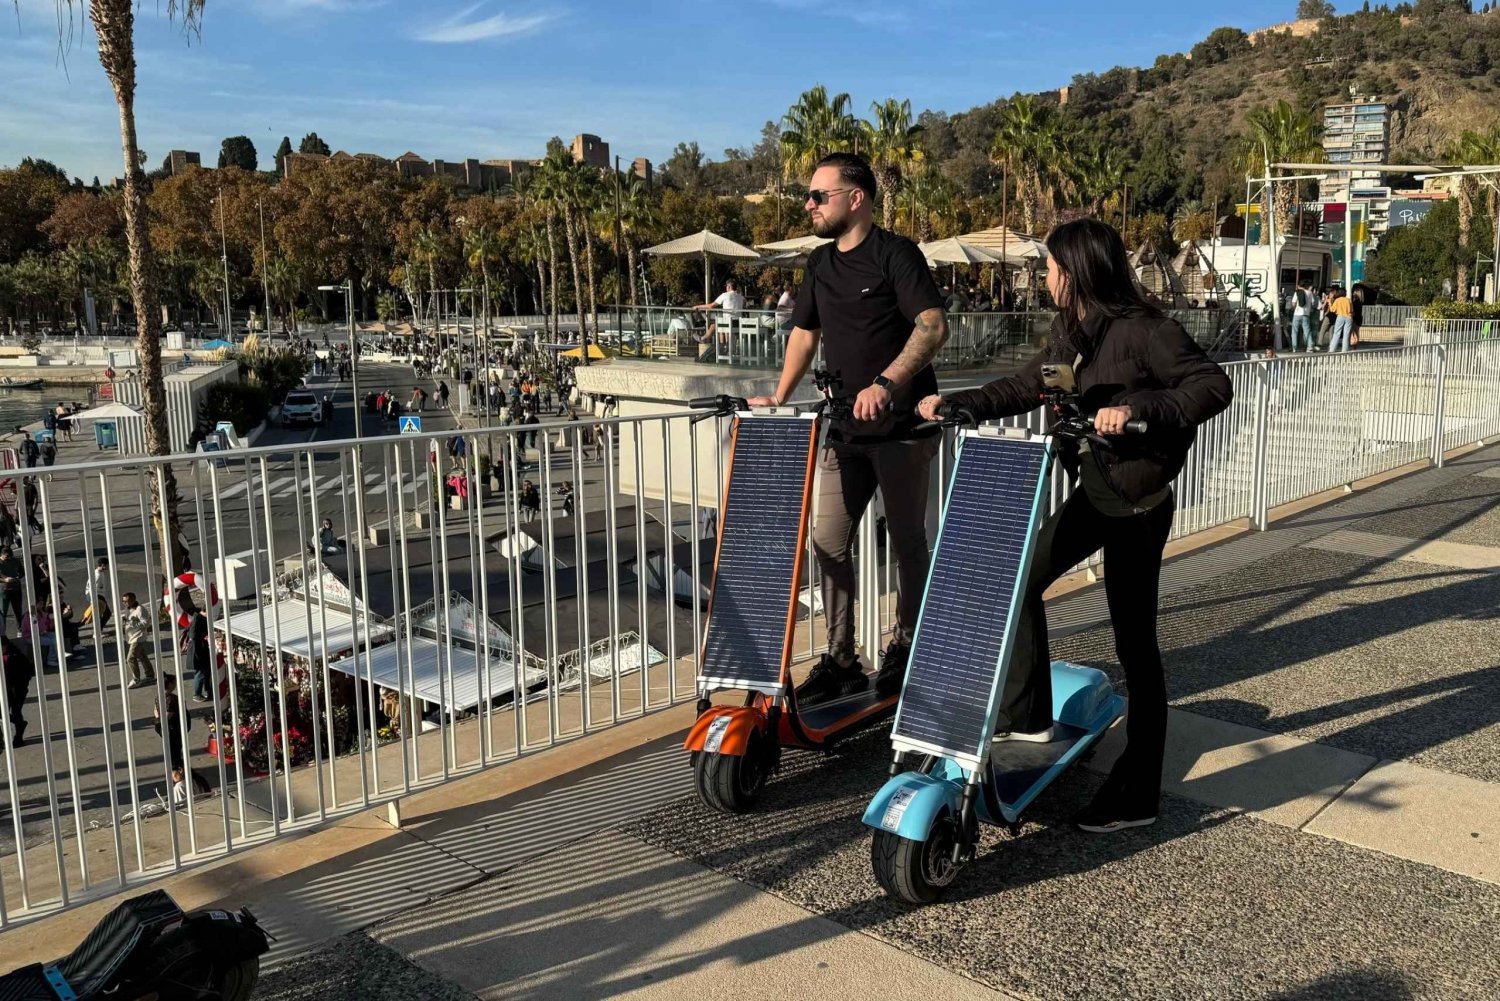 Malaga : Explorez Malaga à bord d'un scooter solaire